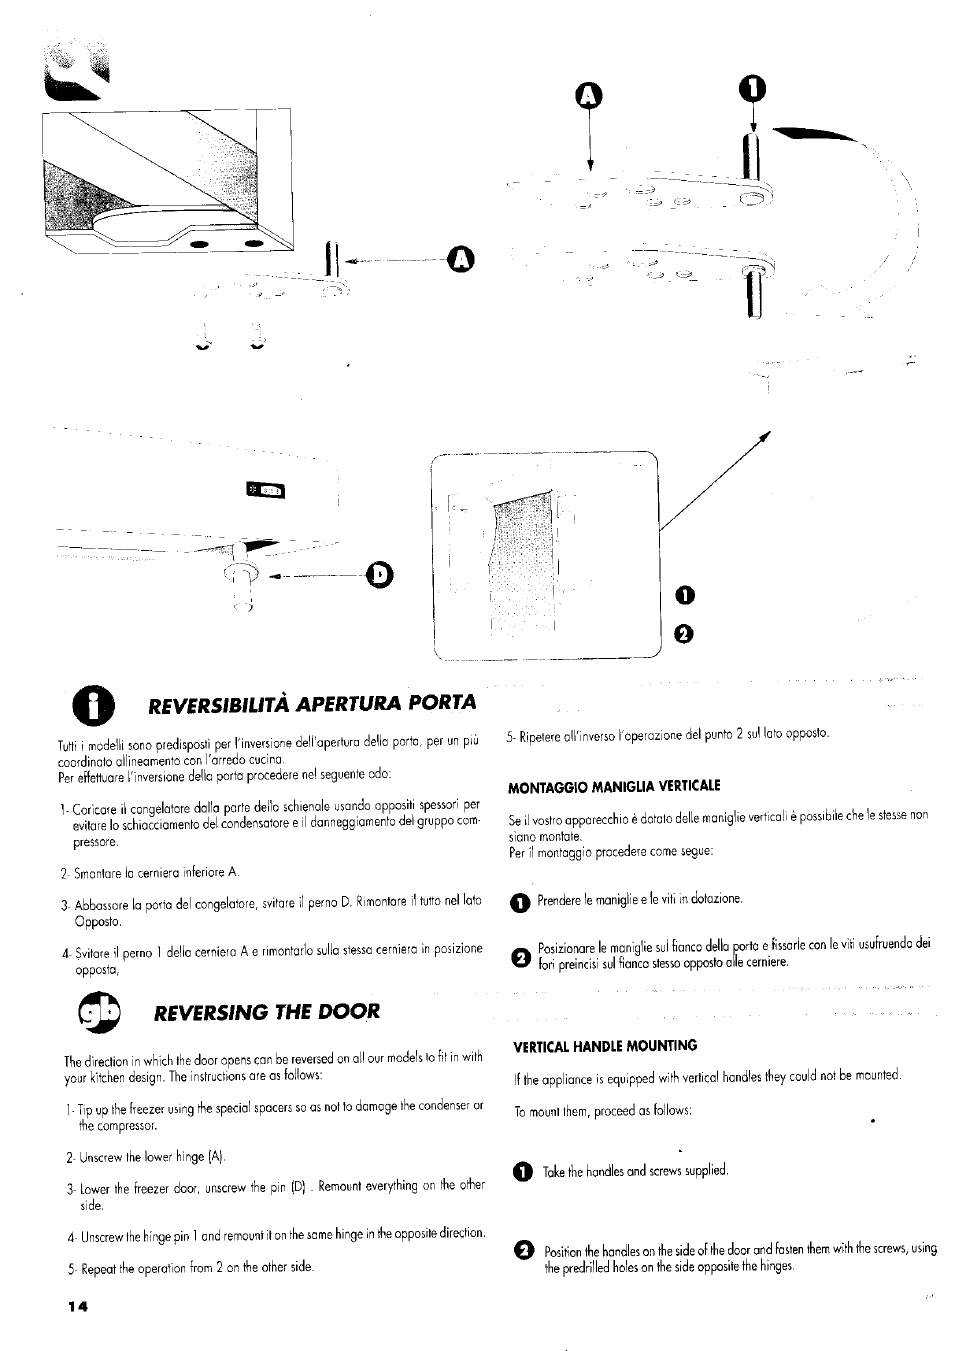 Reversibilità apertura porta, Reversing the door, Montaggio maniglia verticale | Vertical handle mounting, J1 ii | ZANKER GS 105 User Manual | Page 14 / 31